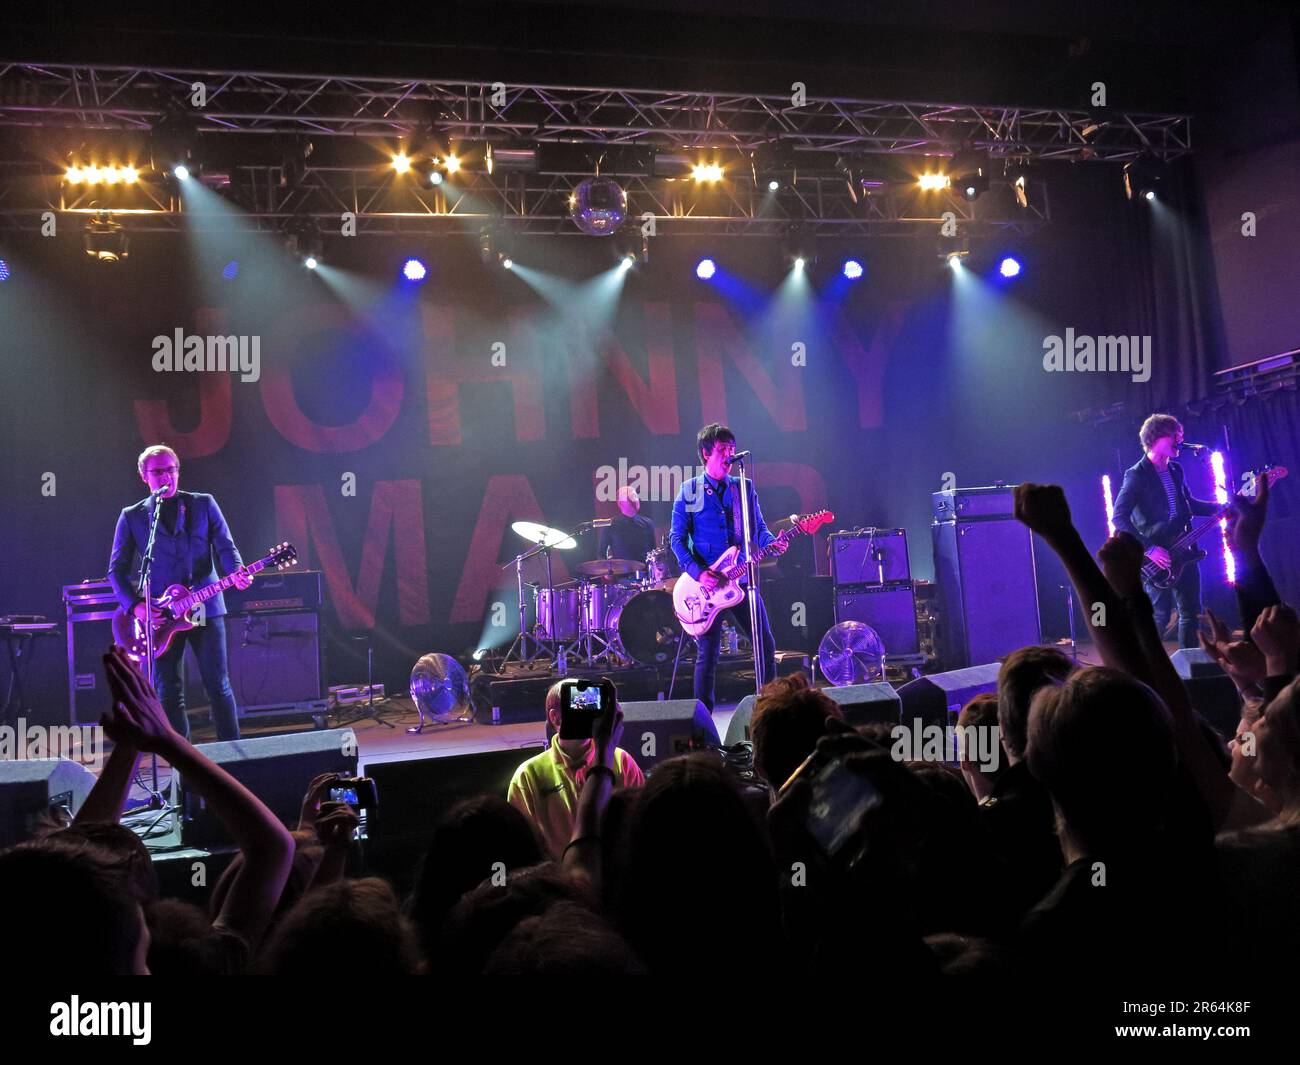 Johnny Marr, guitariste précédemment des Smiths, à l'Académie de Manchester, concert 12/10/2013 Banque D'Images